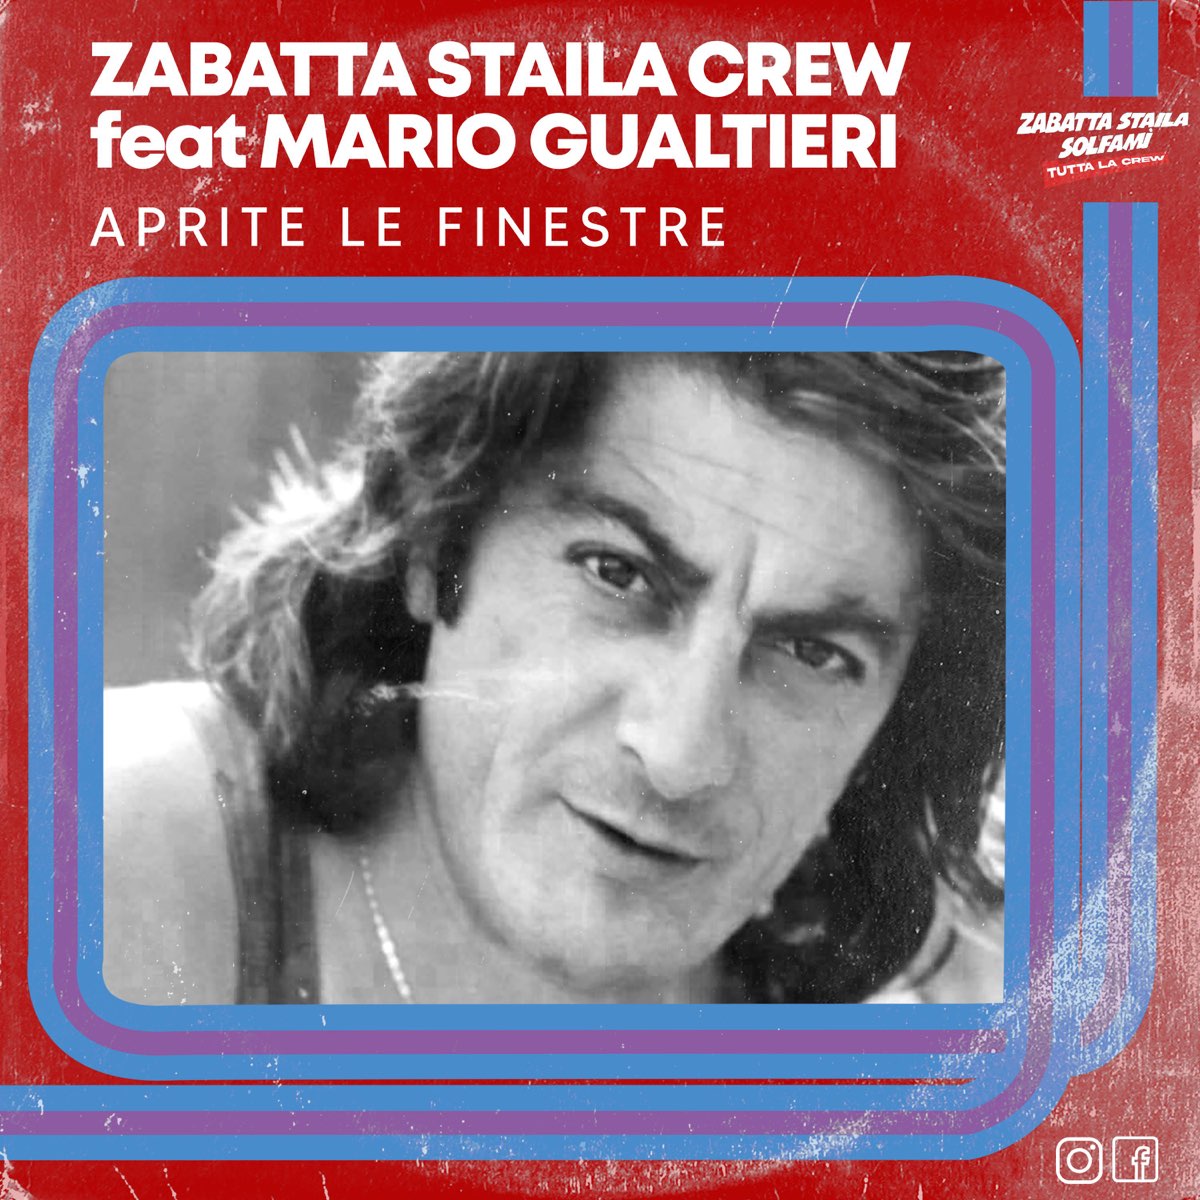 Aprite le finestre (Oh Cosentine) (feat. Mario Gualtieri) - Single by  Zabatta Staila Crew on Apple Music